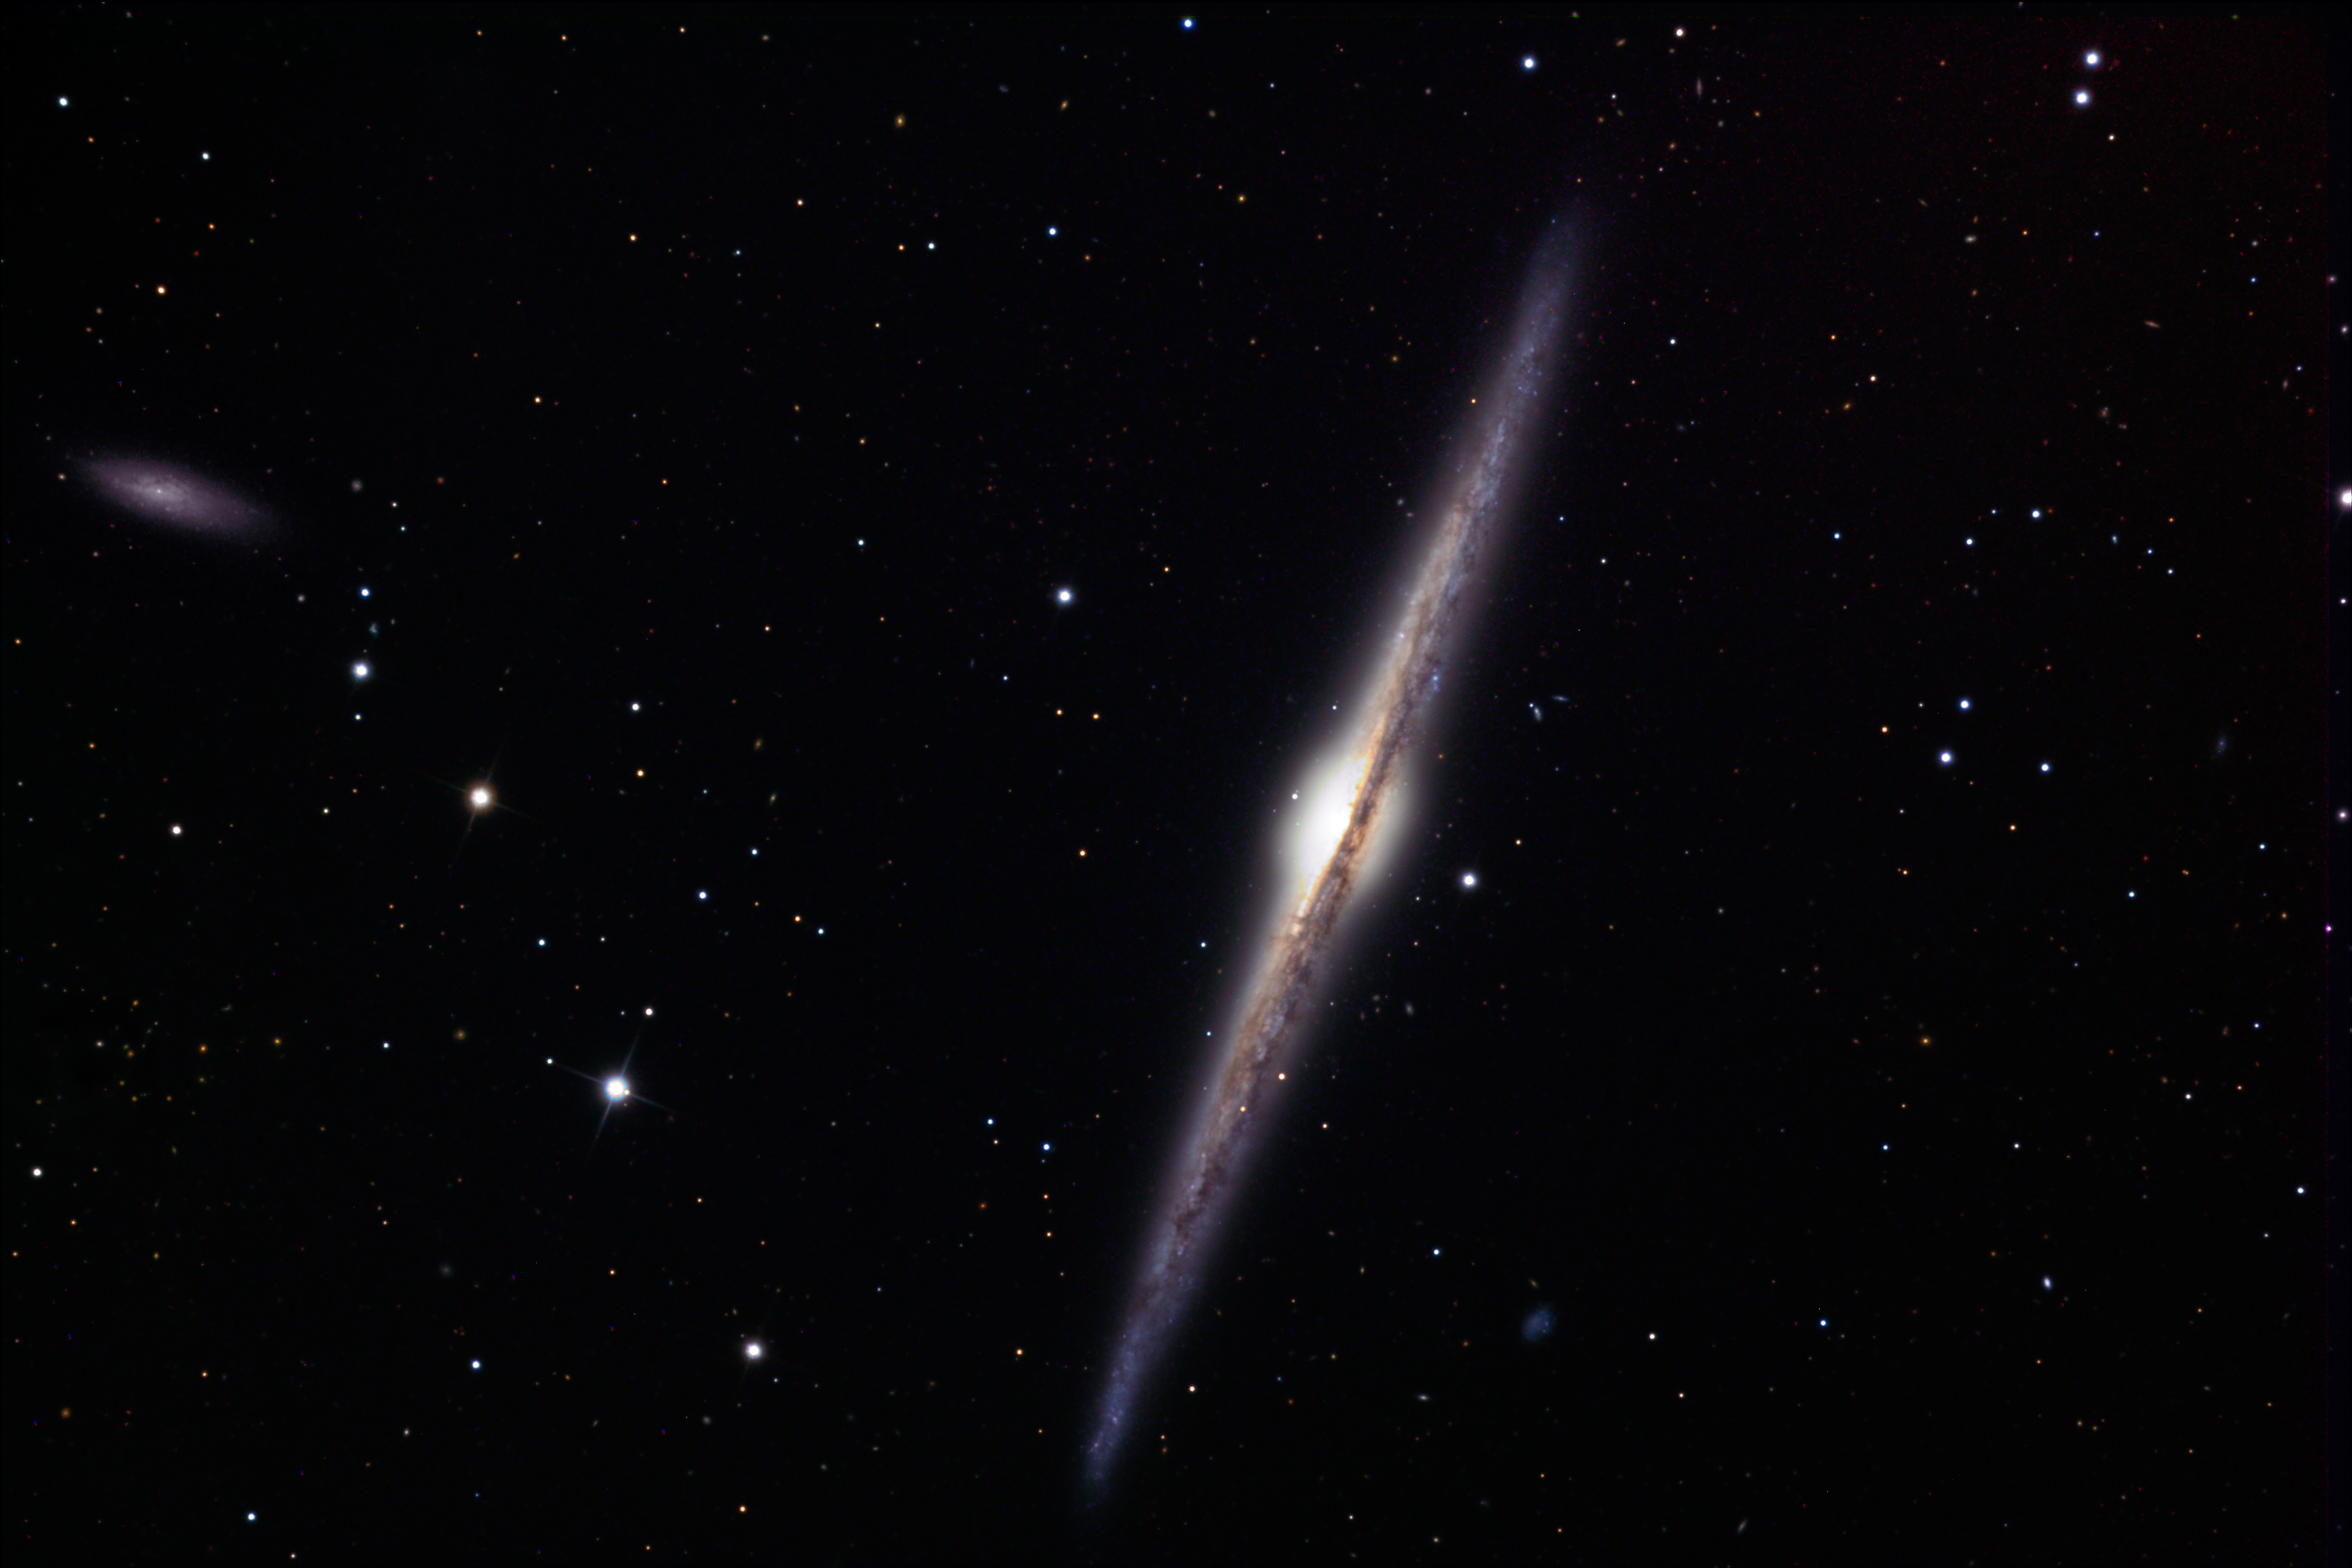 NGC 4565 and 4562